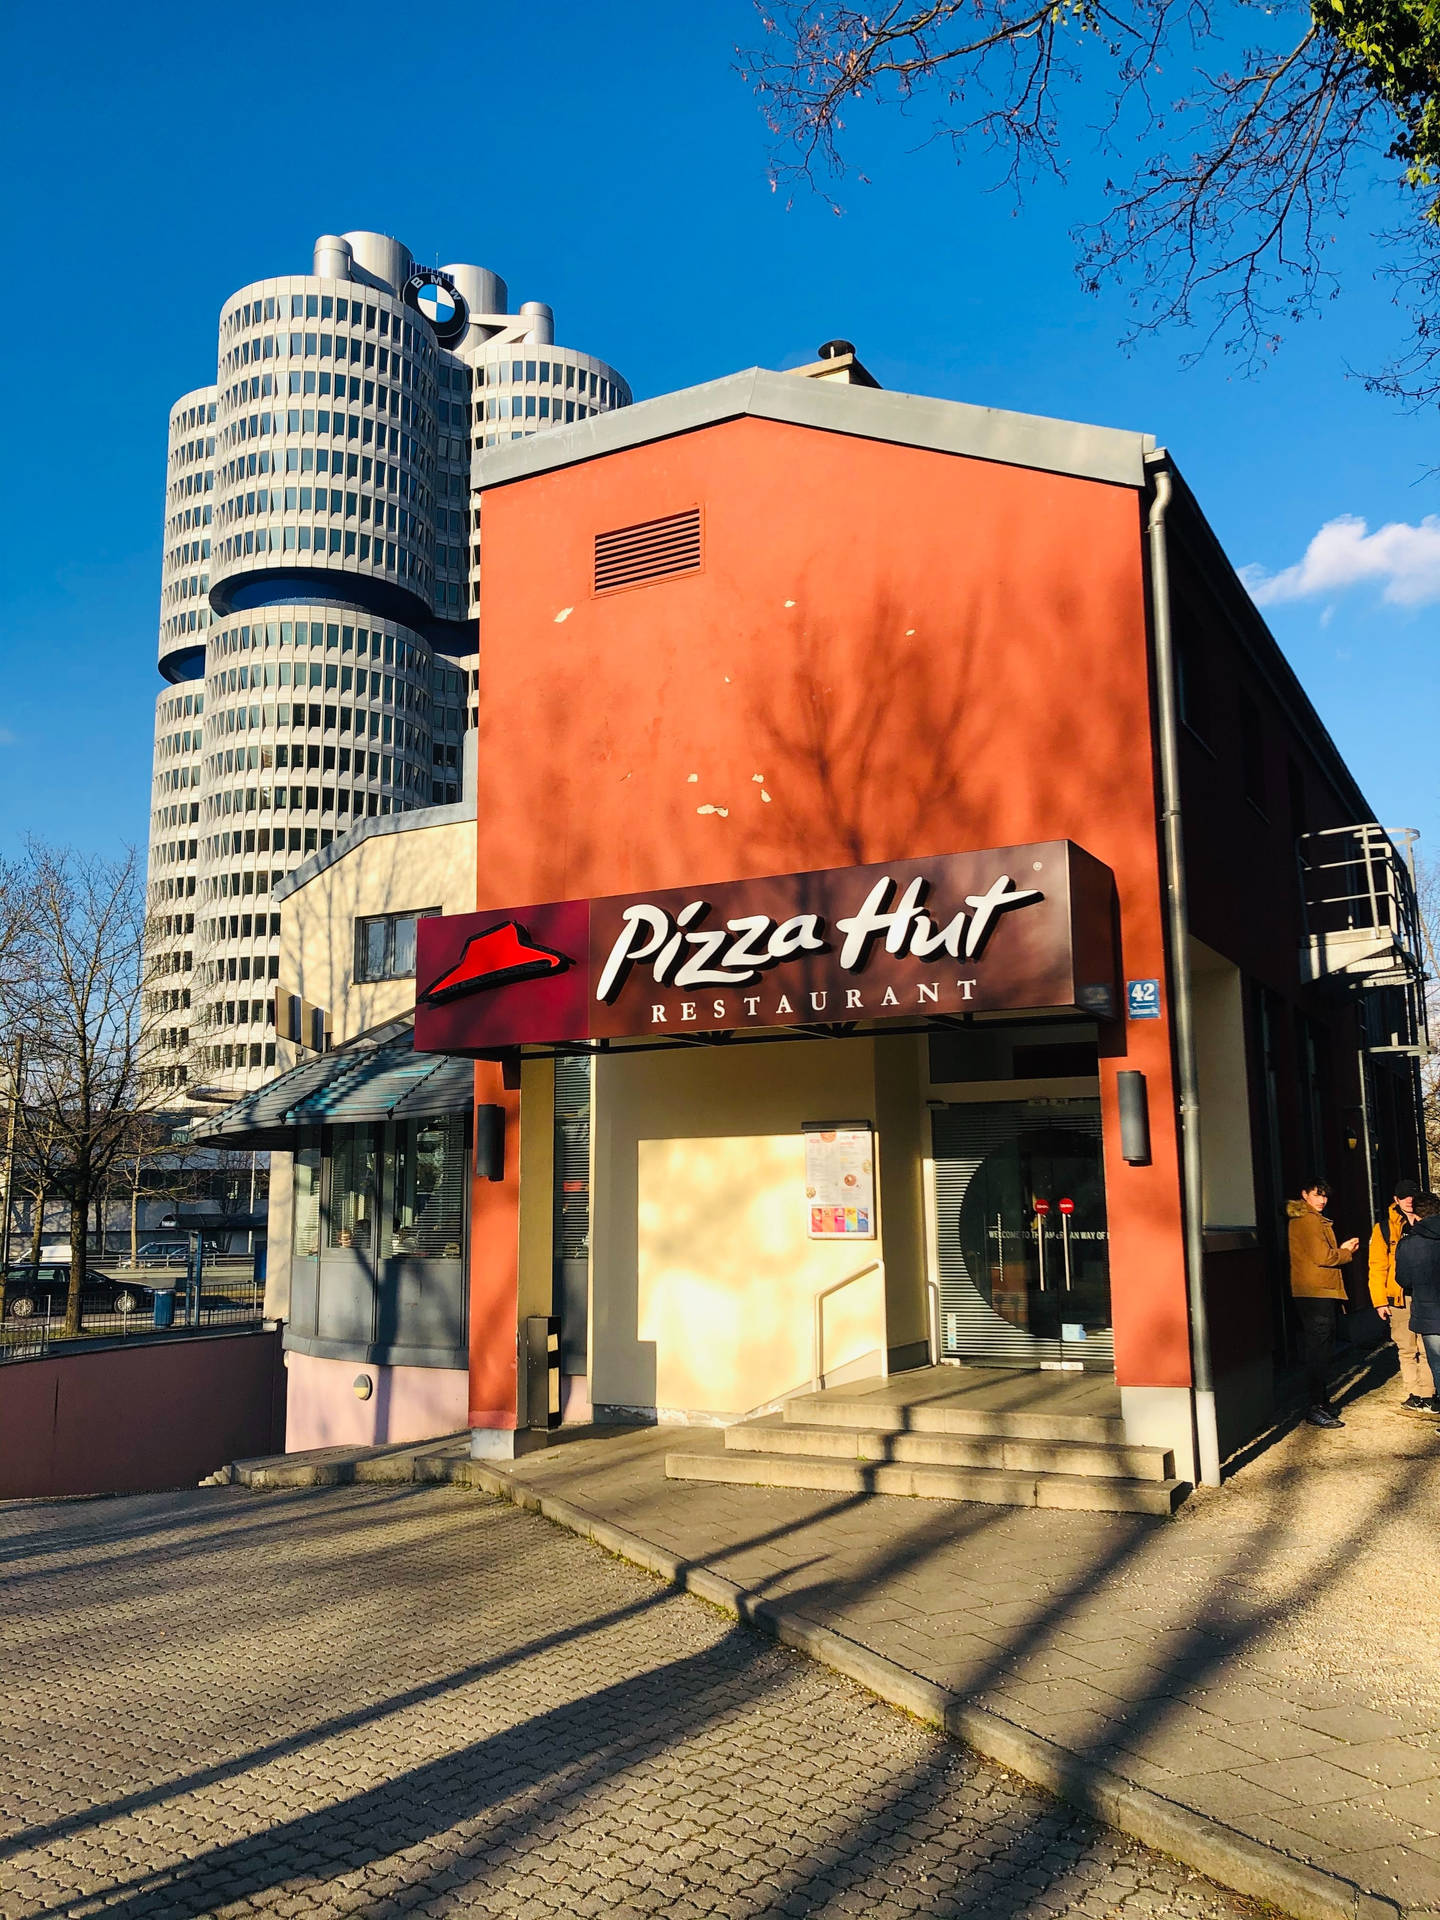 Pizza Hut Restaurant Facade Wallpaper